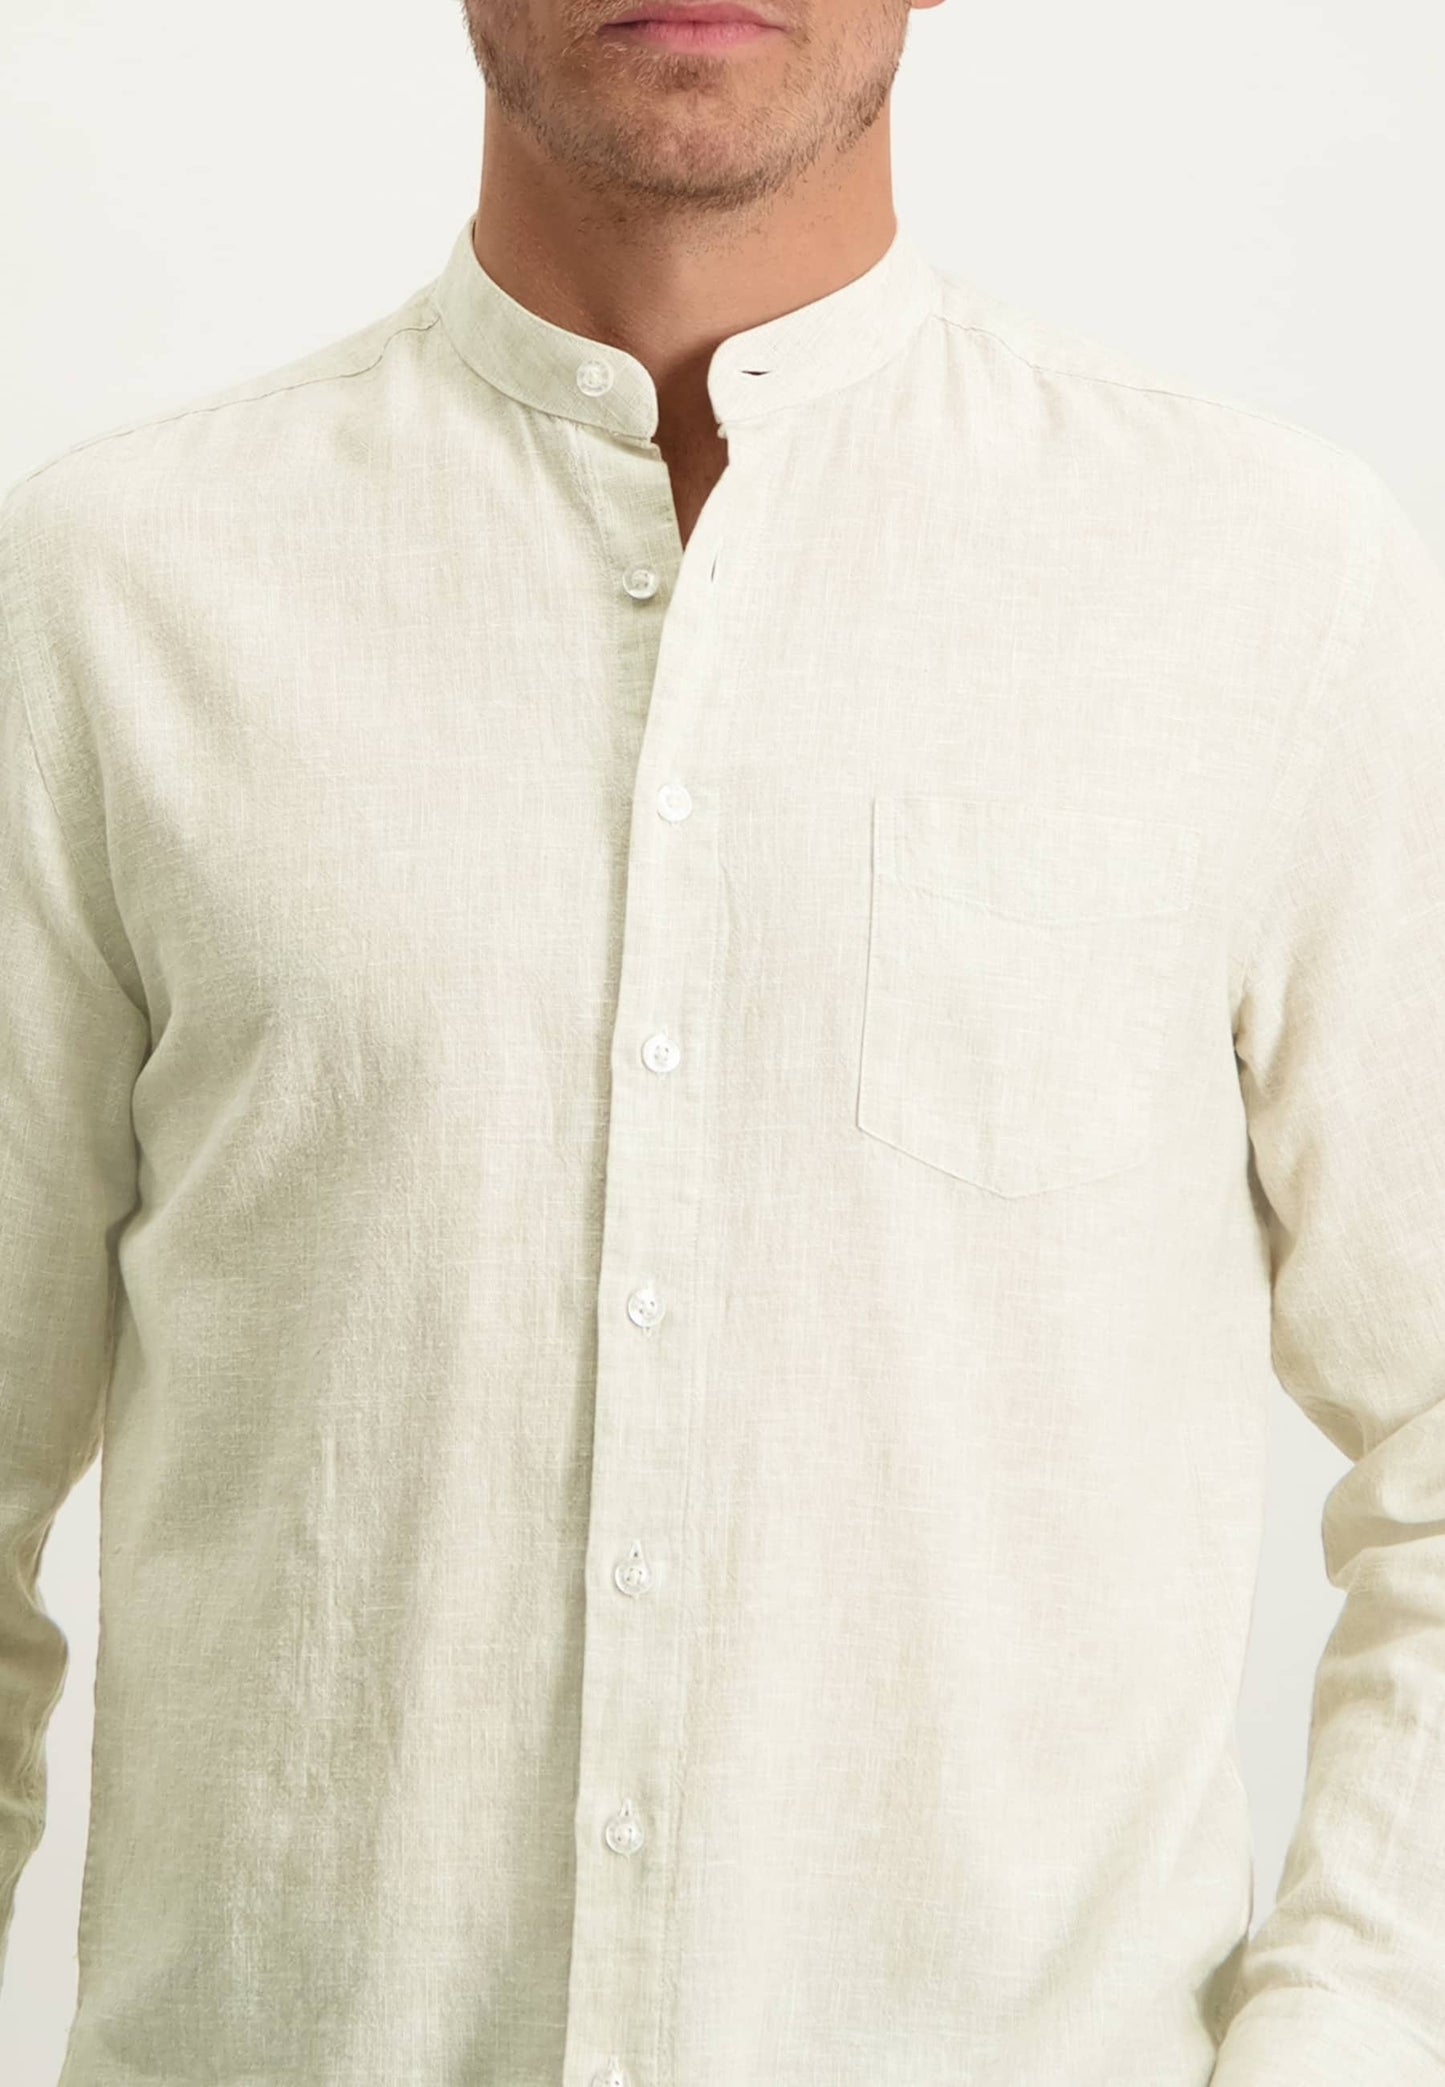 Sand cotton linnen regular fit shirt State of Art - 13237/1611